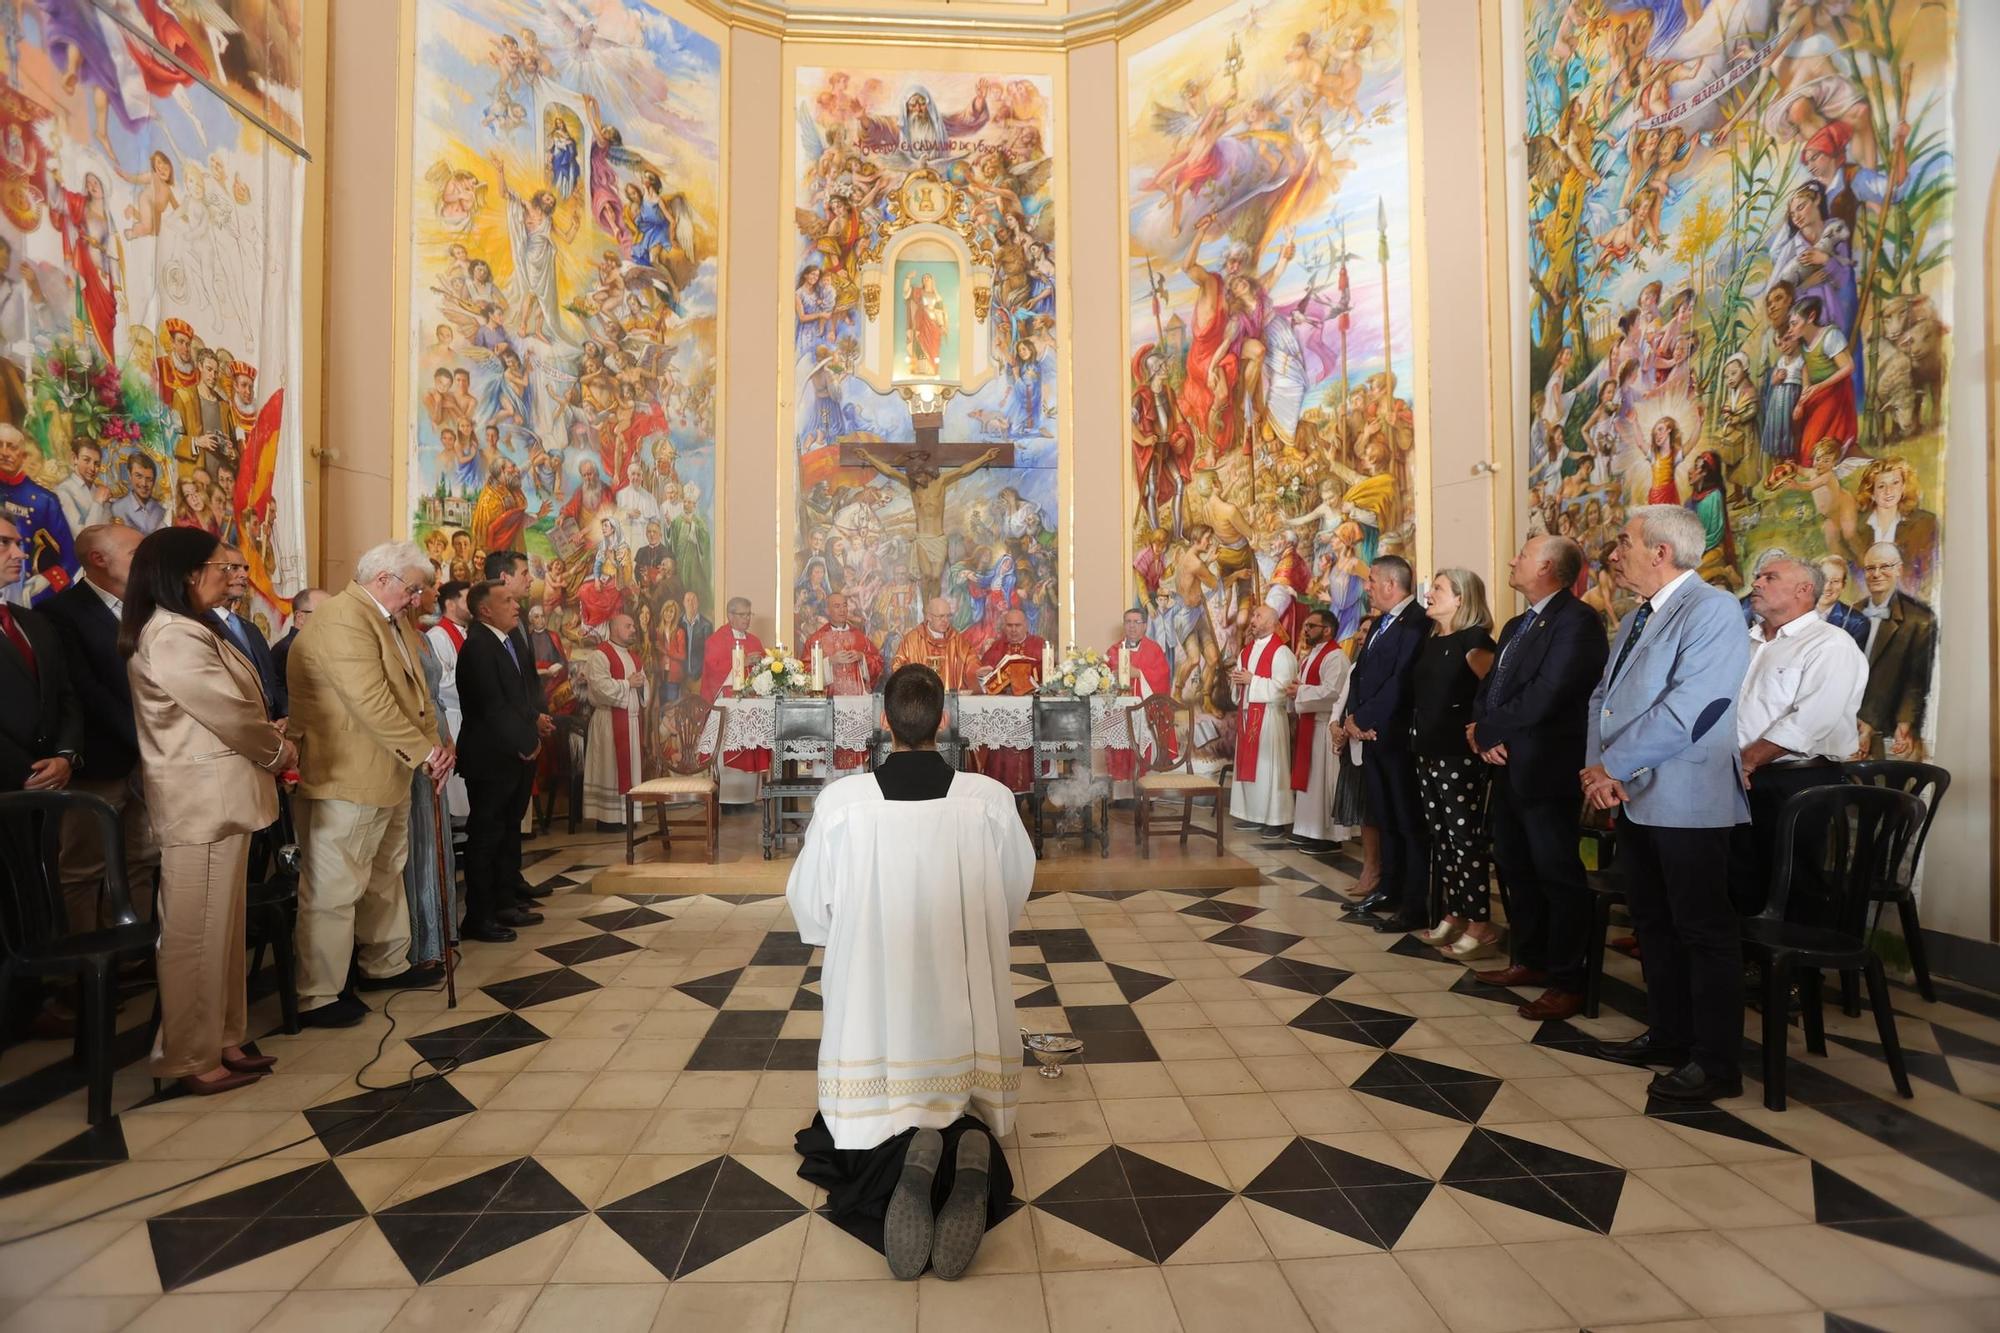 Fotos de la bendición de los frescos de José Torner en la ermita de Santa Bárbara de Burriana